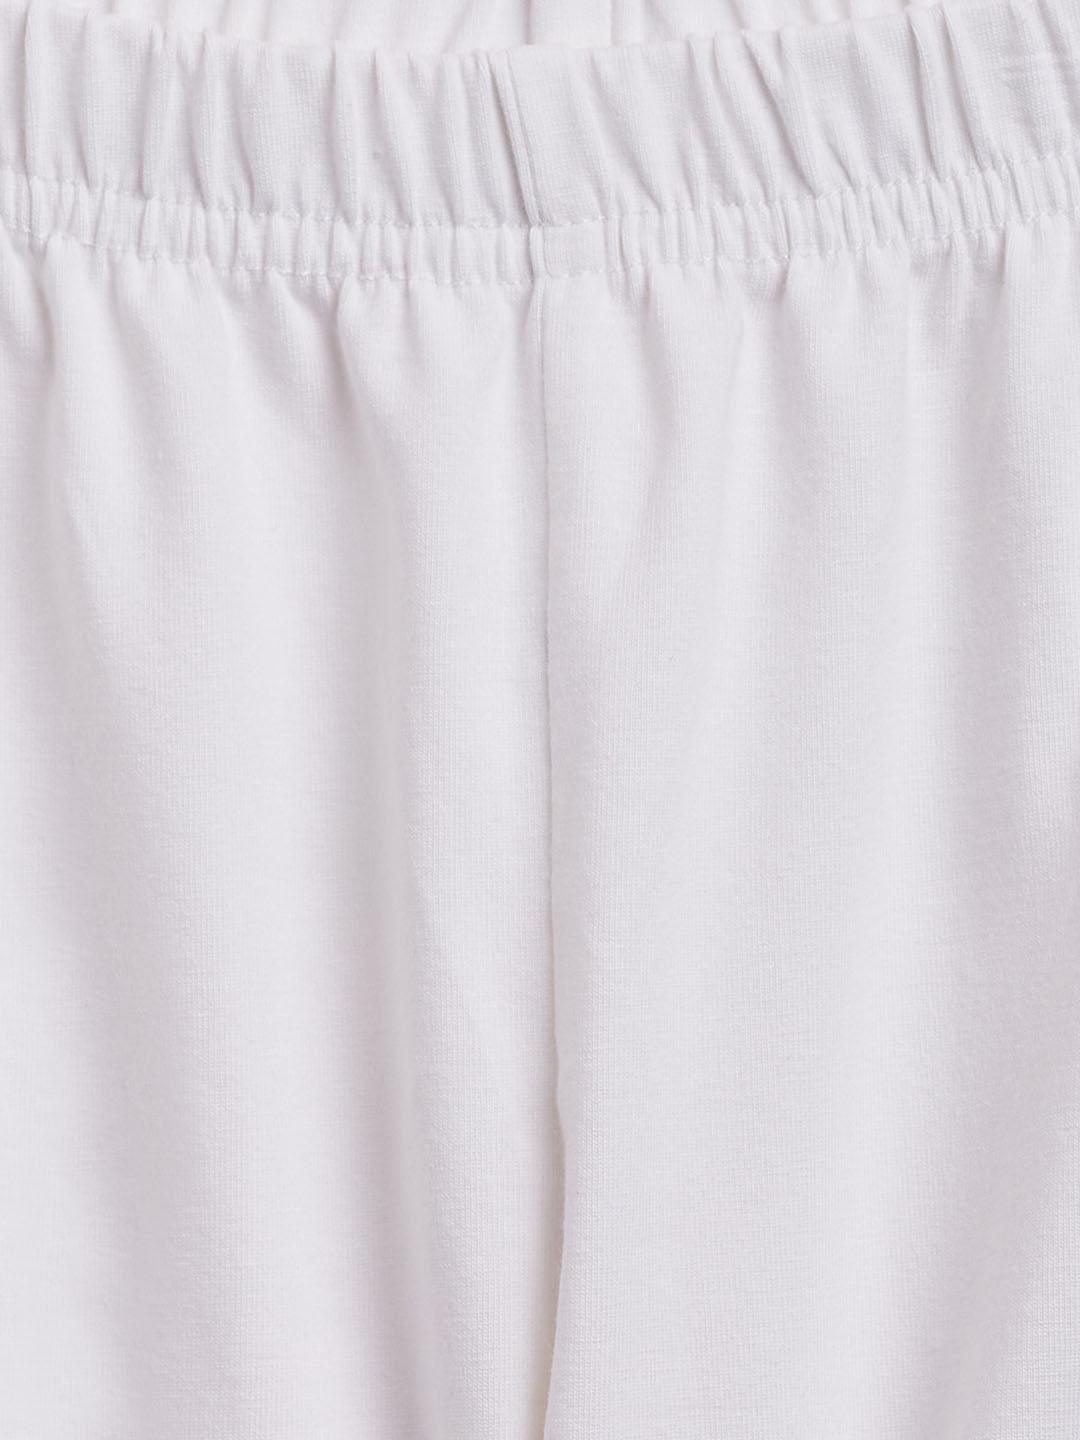 VASTRAMAY SISHU Girl's White Chikankari Kurta Pyjama Set - Uboric